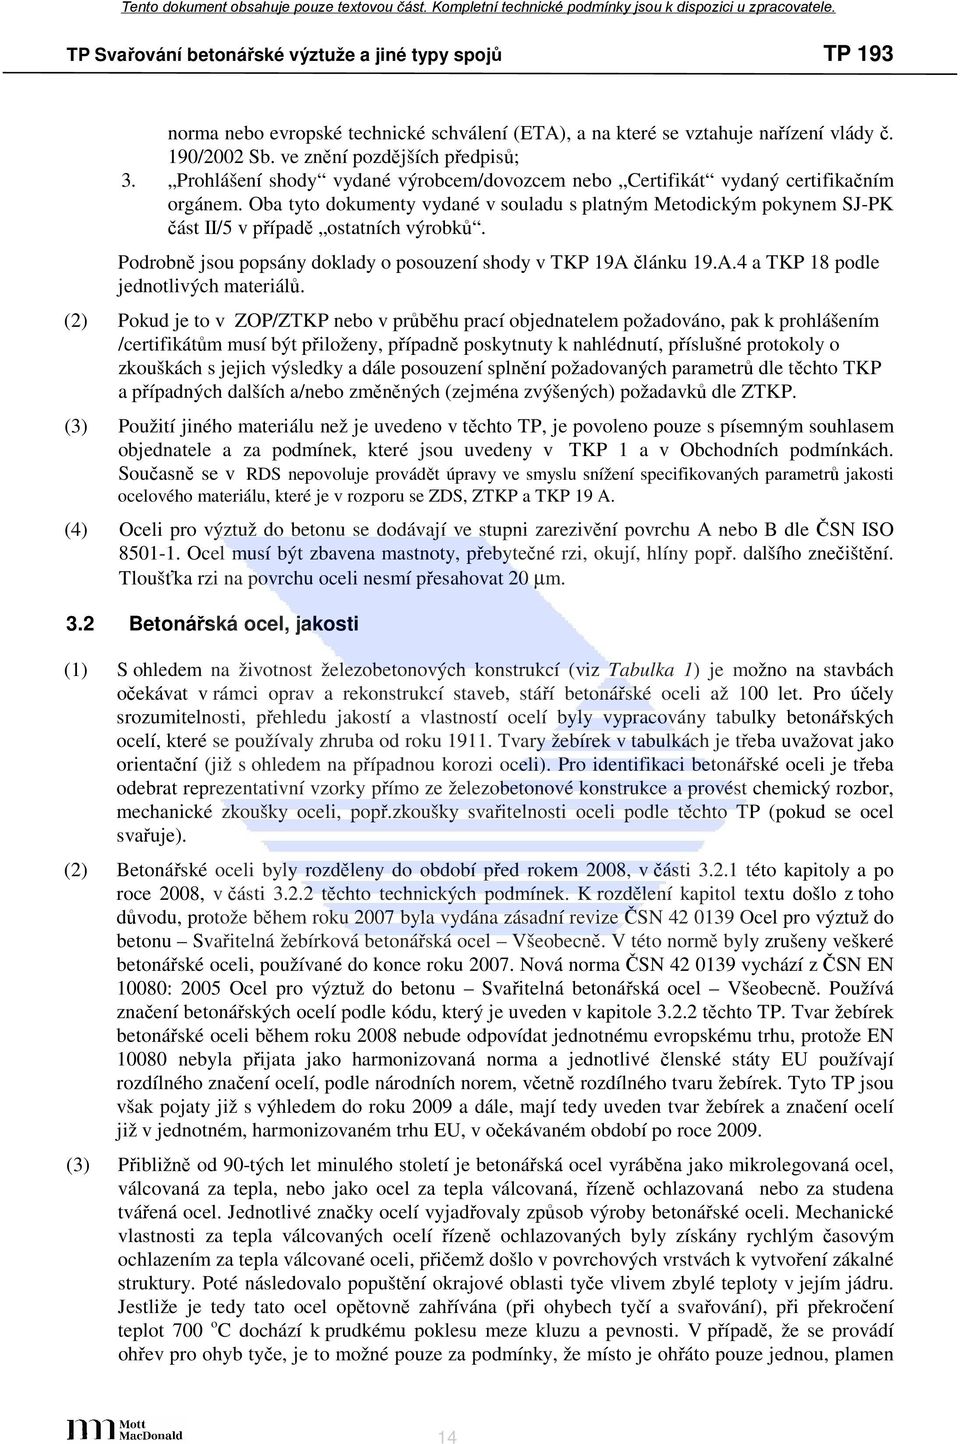 Podrobně jsou popsány doklady o posouzení shody v TKP 19A článku 19.A.4 a TKP 18 podle jednotlivých materiálů.